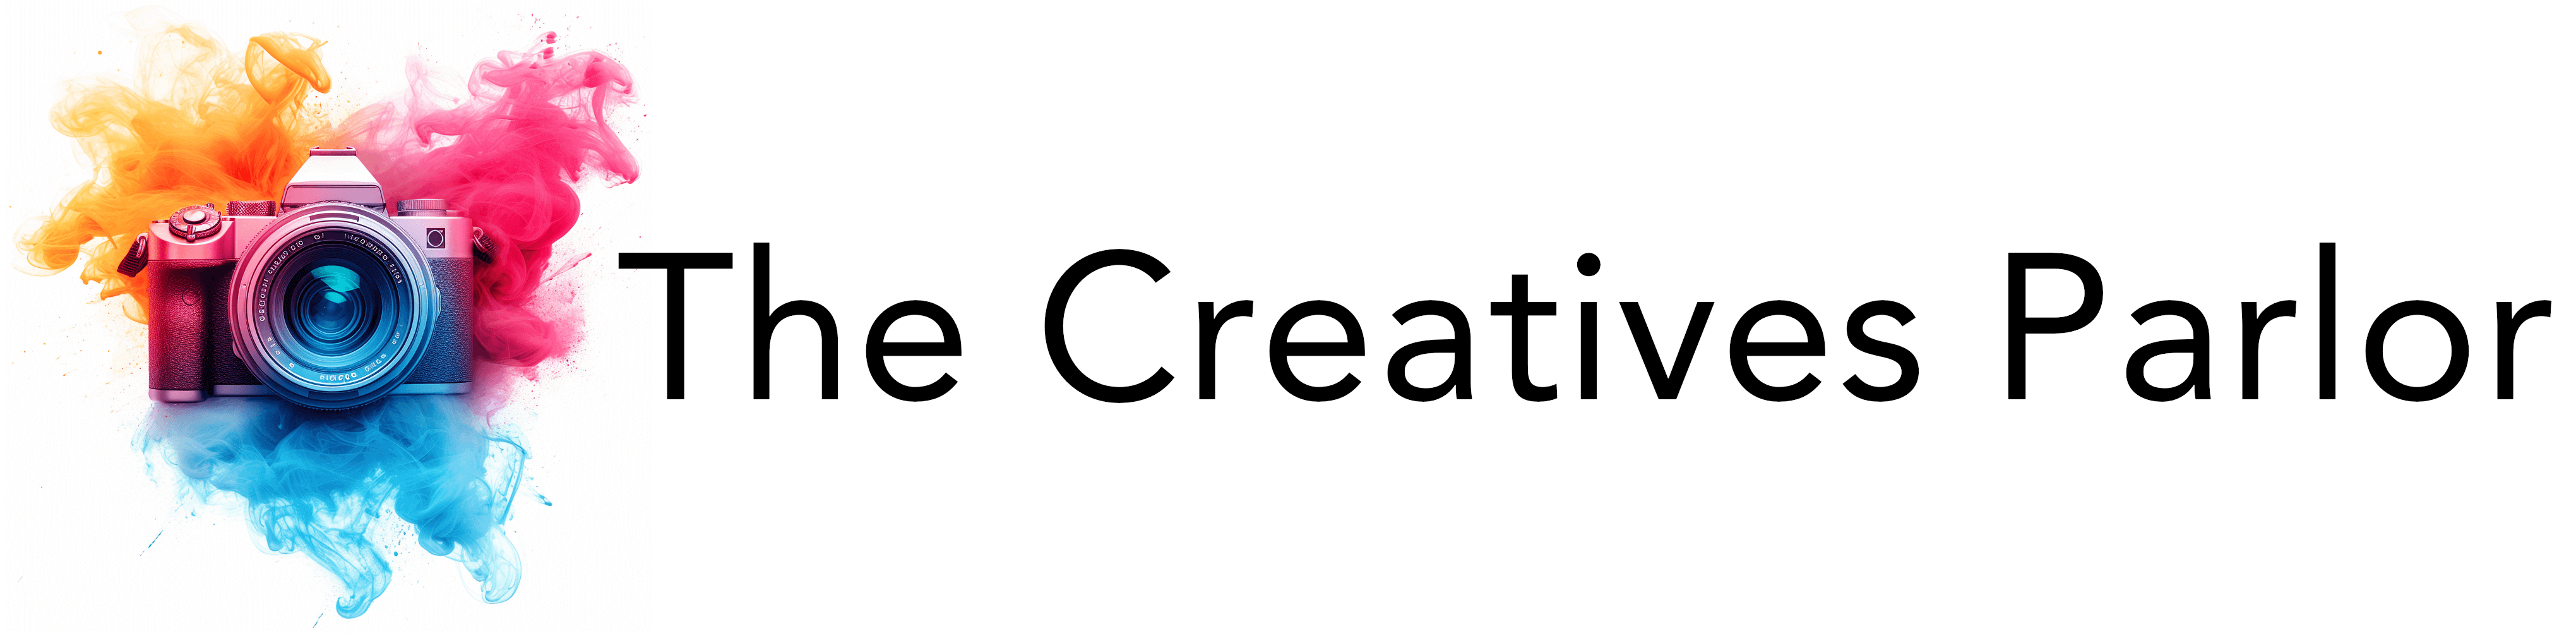 thecreativesparlor.com